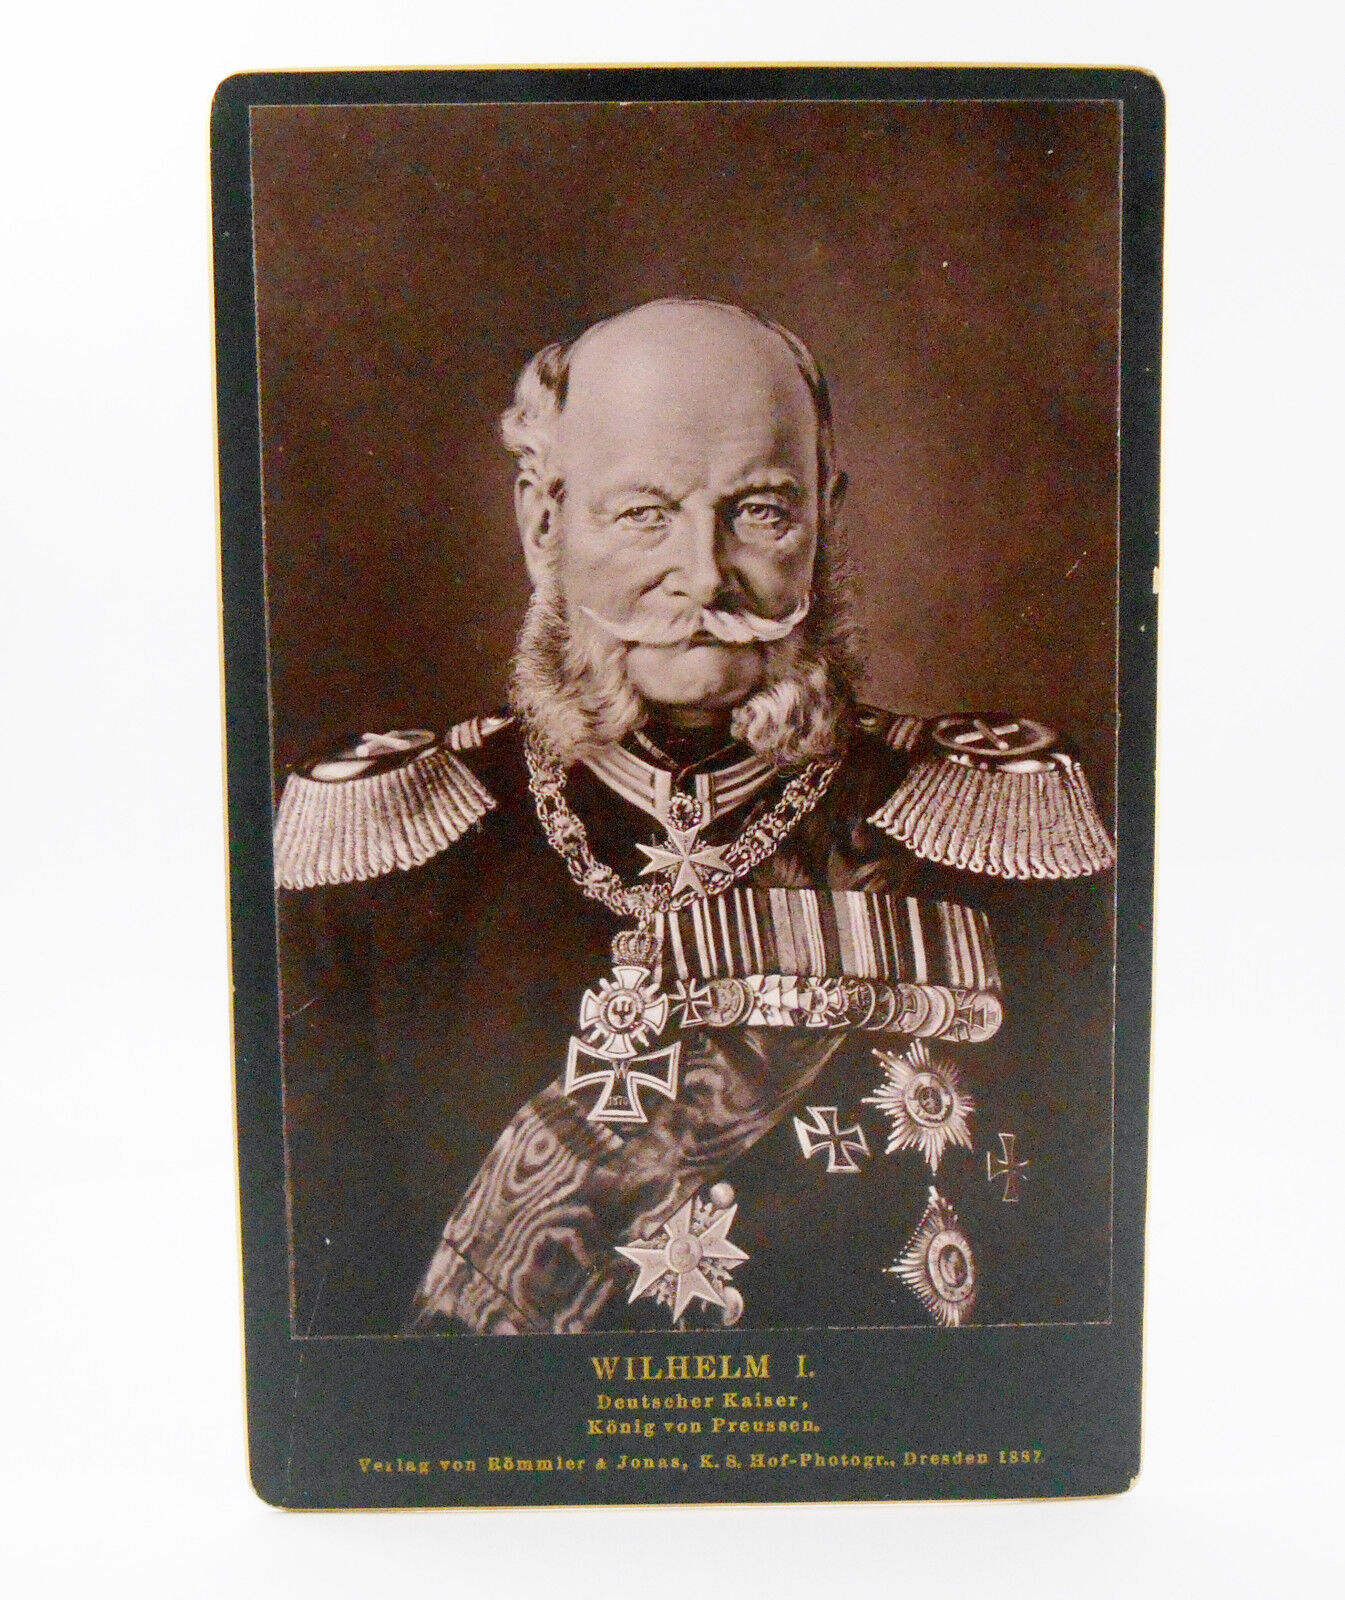 Kaiser Wilhelm I Photograph Rommler & Jonas Dresden 1887 Original Cabinet CDV